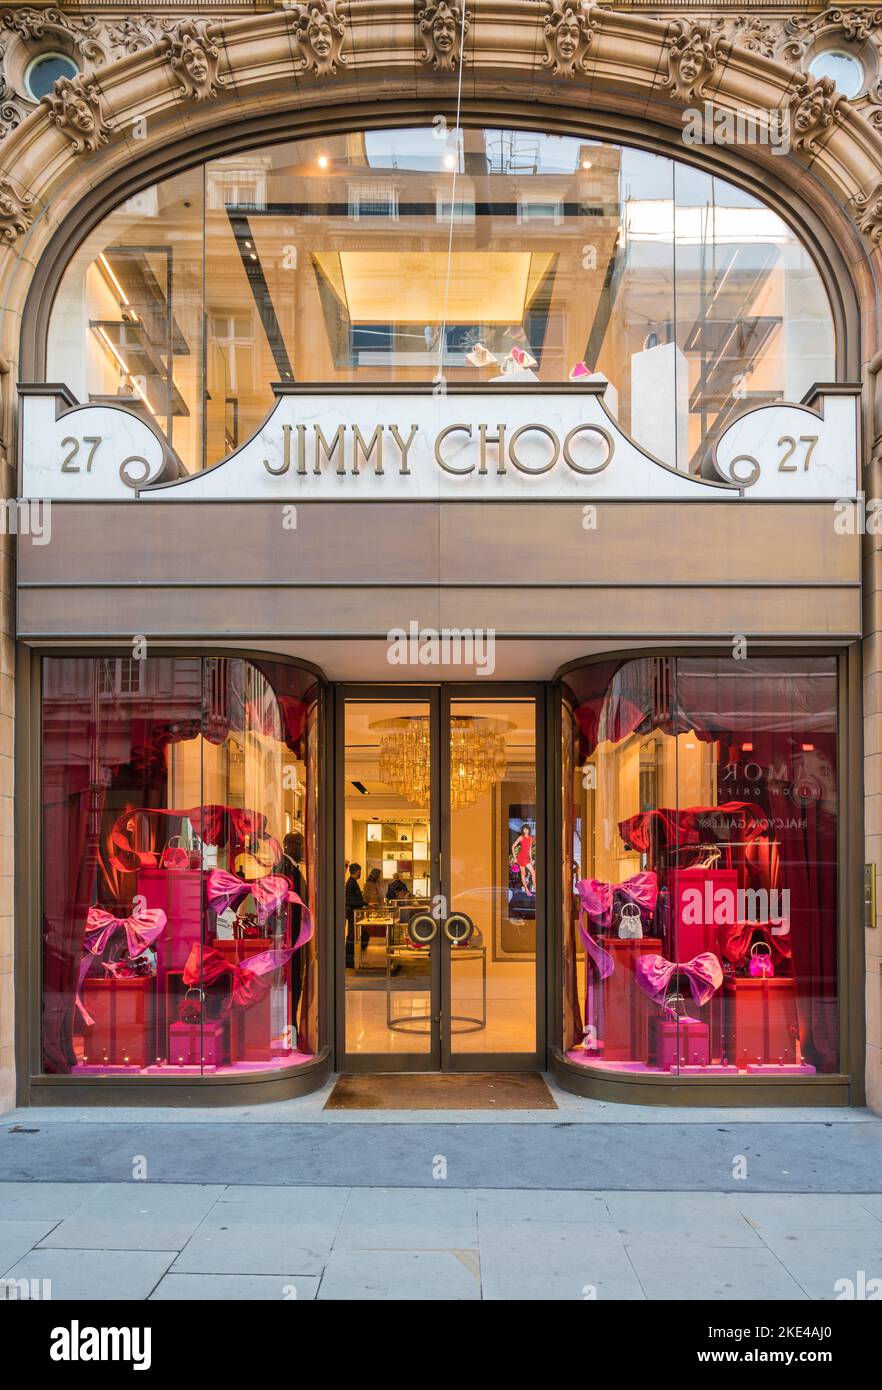 Tienda de Jimmy Choo shop, un minorista de calzado de diseño en New Bond Street, Londres, Inglaterra, Reino Unido Foto de stock